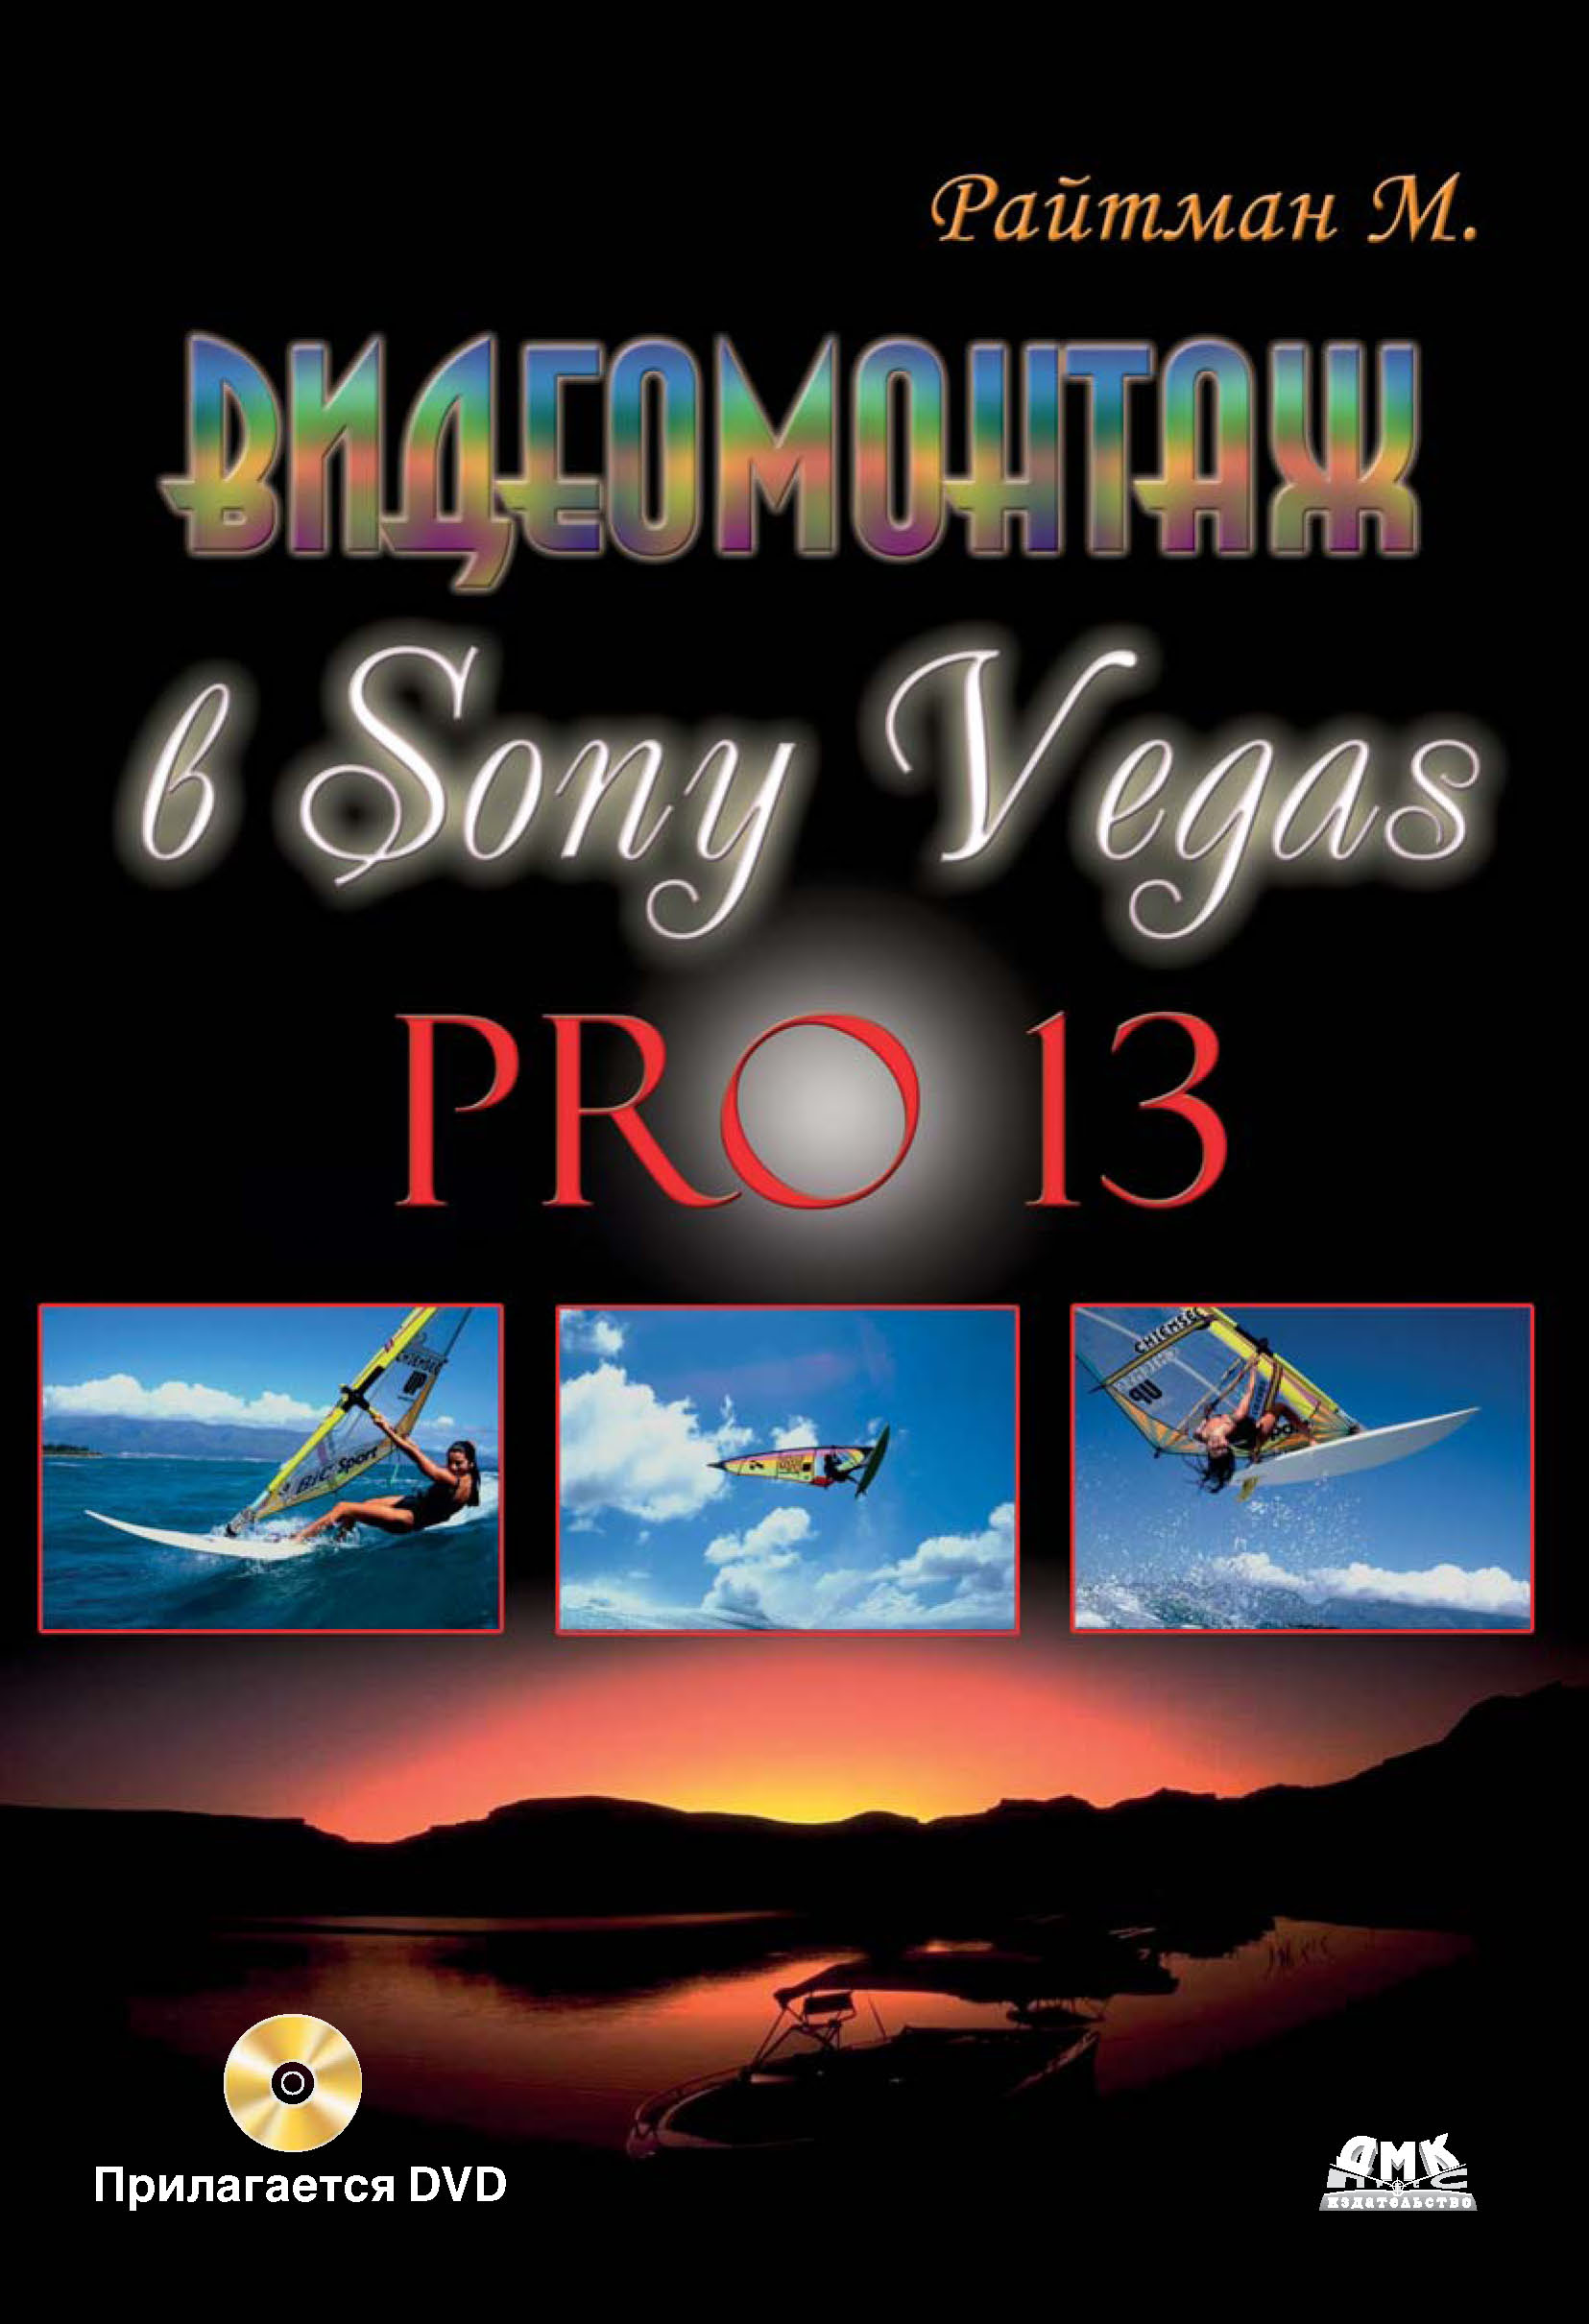 Книга  Видеомонтаж в Sony Vegas Pro 13 созданная Михаил Райтман может относится к жанру программы. Стоимость электронной книги Видеомонтаж в Sony Vegas Pro 13 с идентификатором 10016544 составляет 399.00 руб.